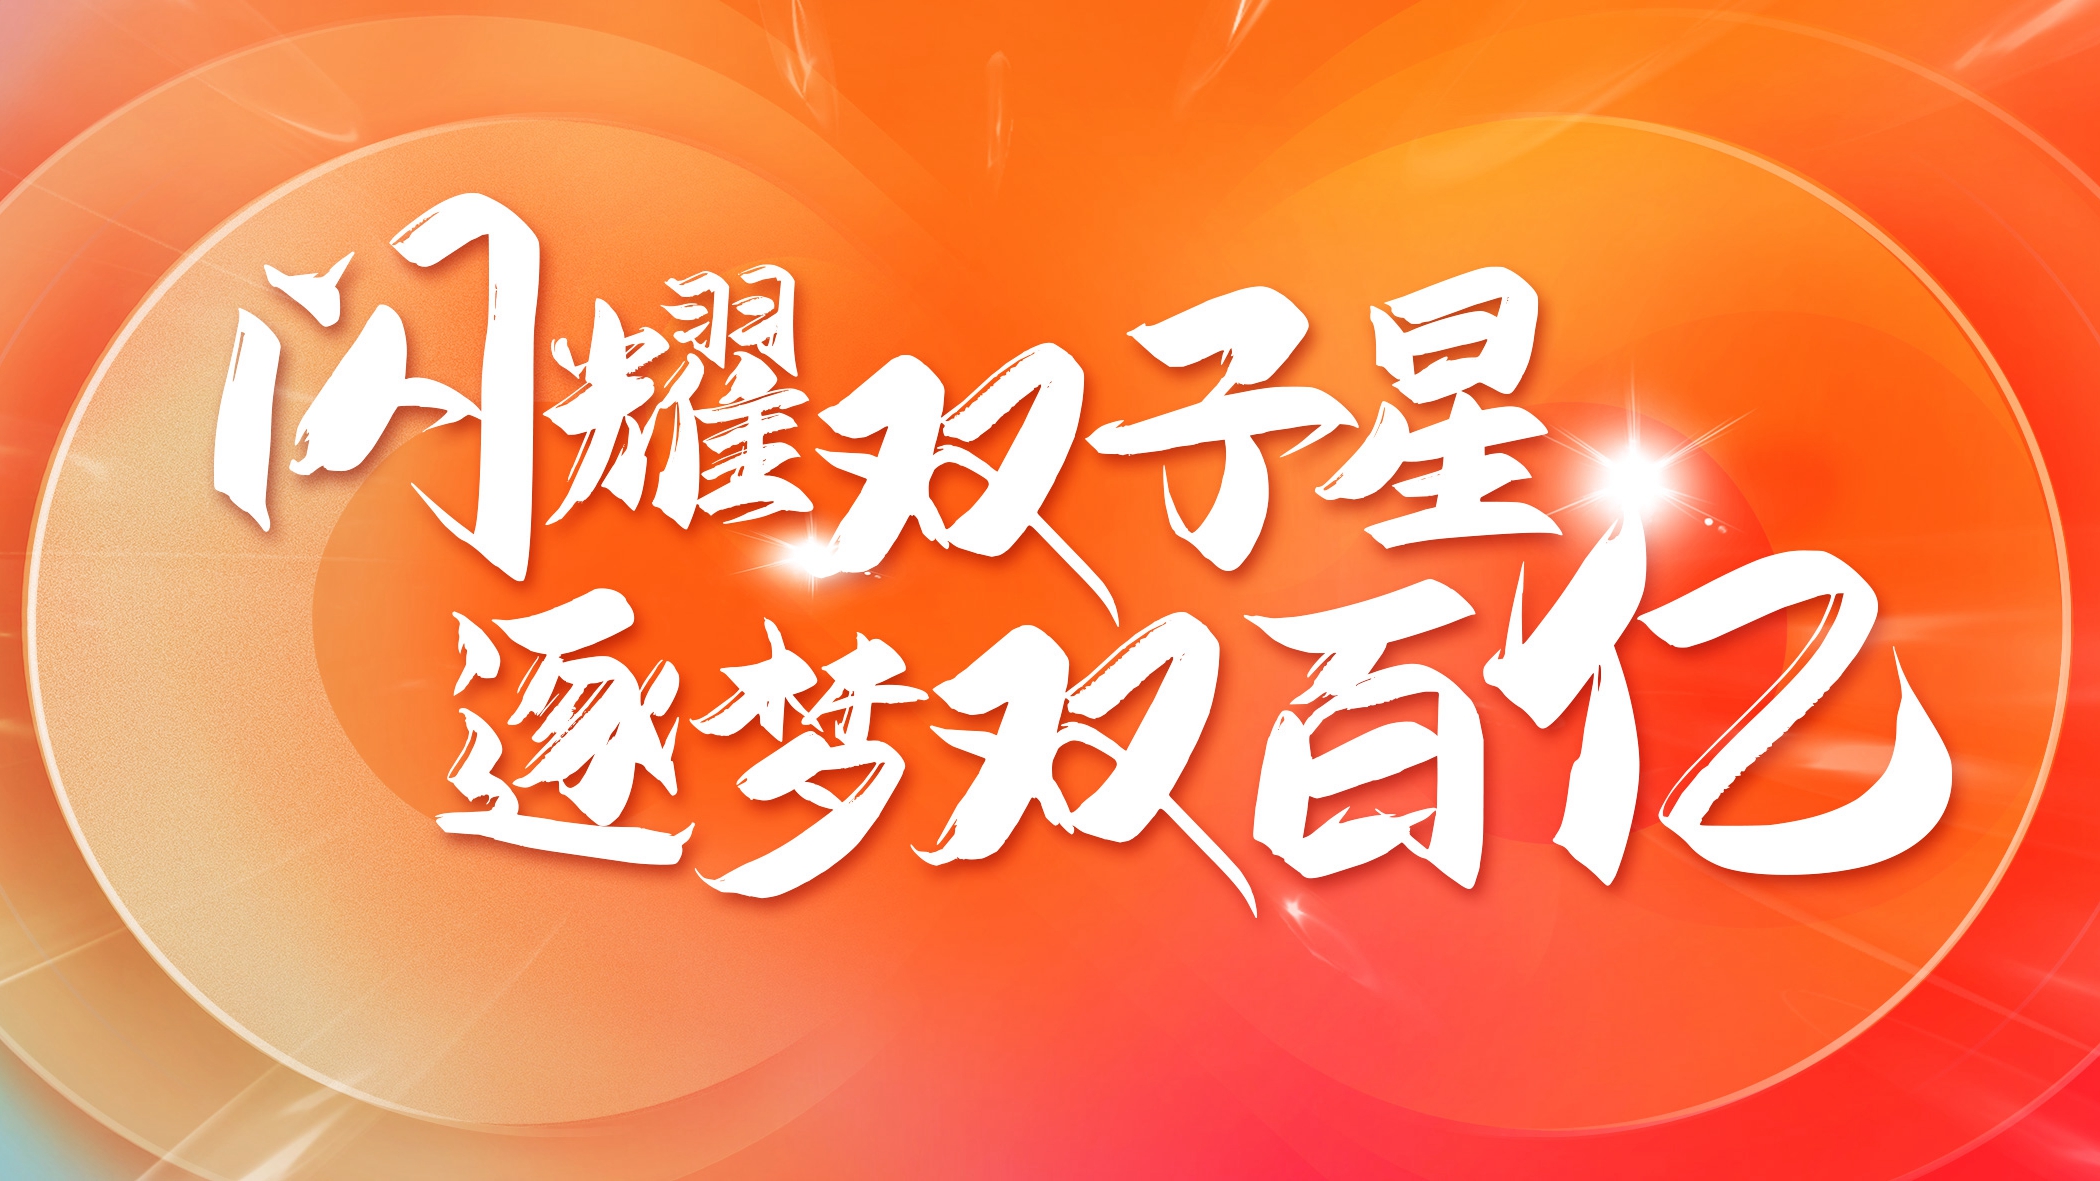 红红火火，全球科华人欢喜迎龙年